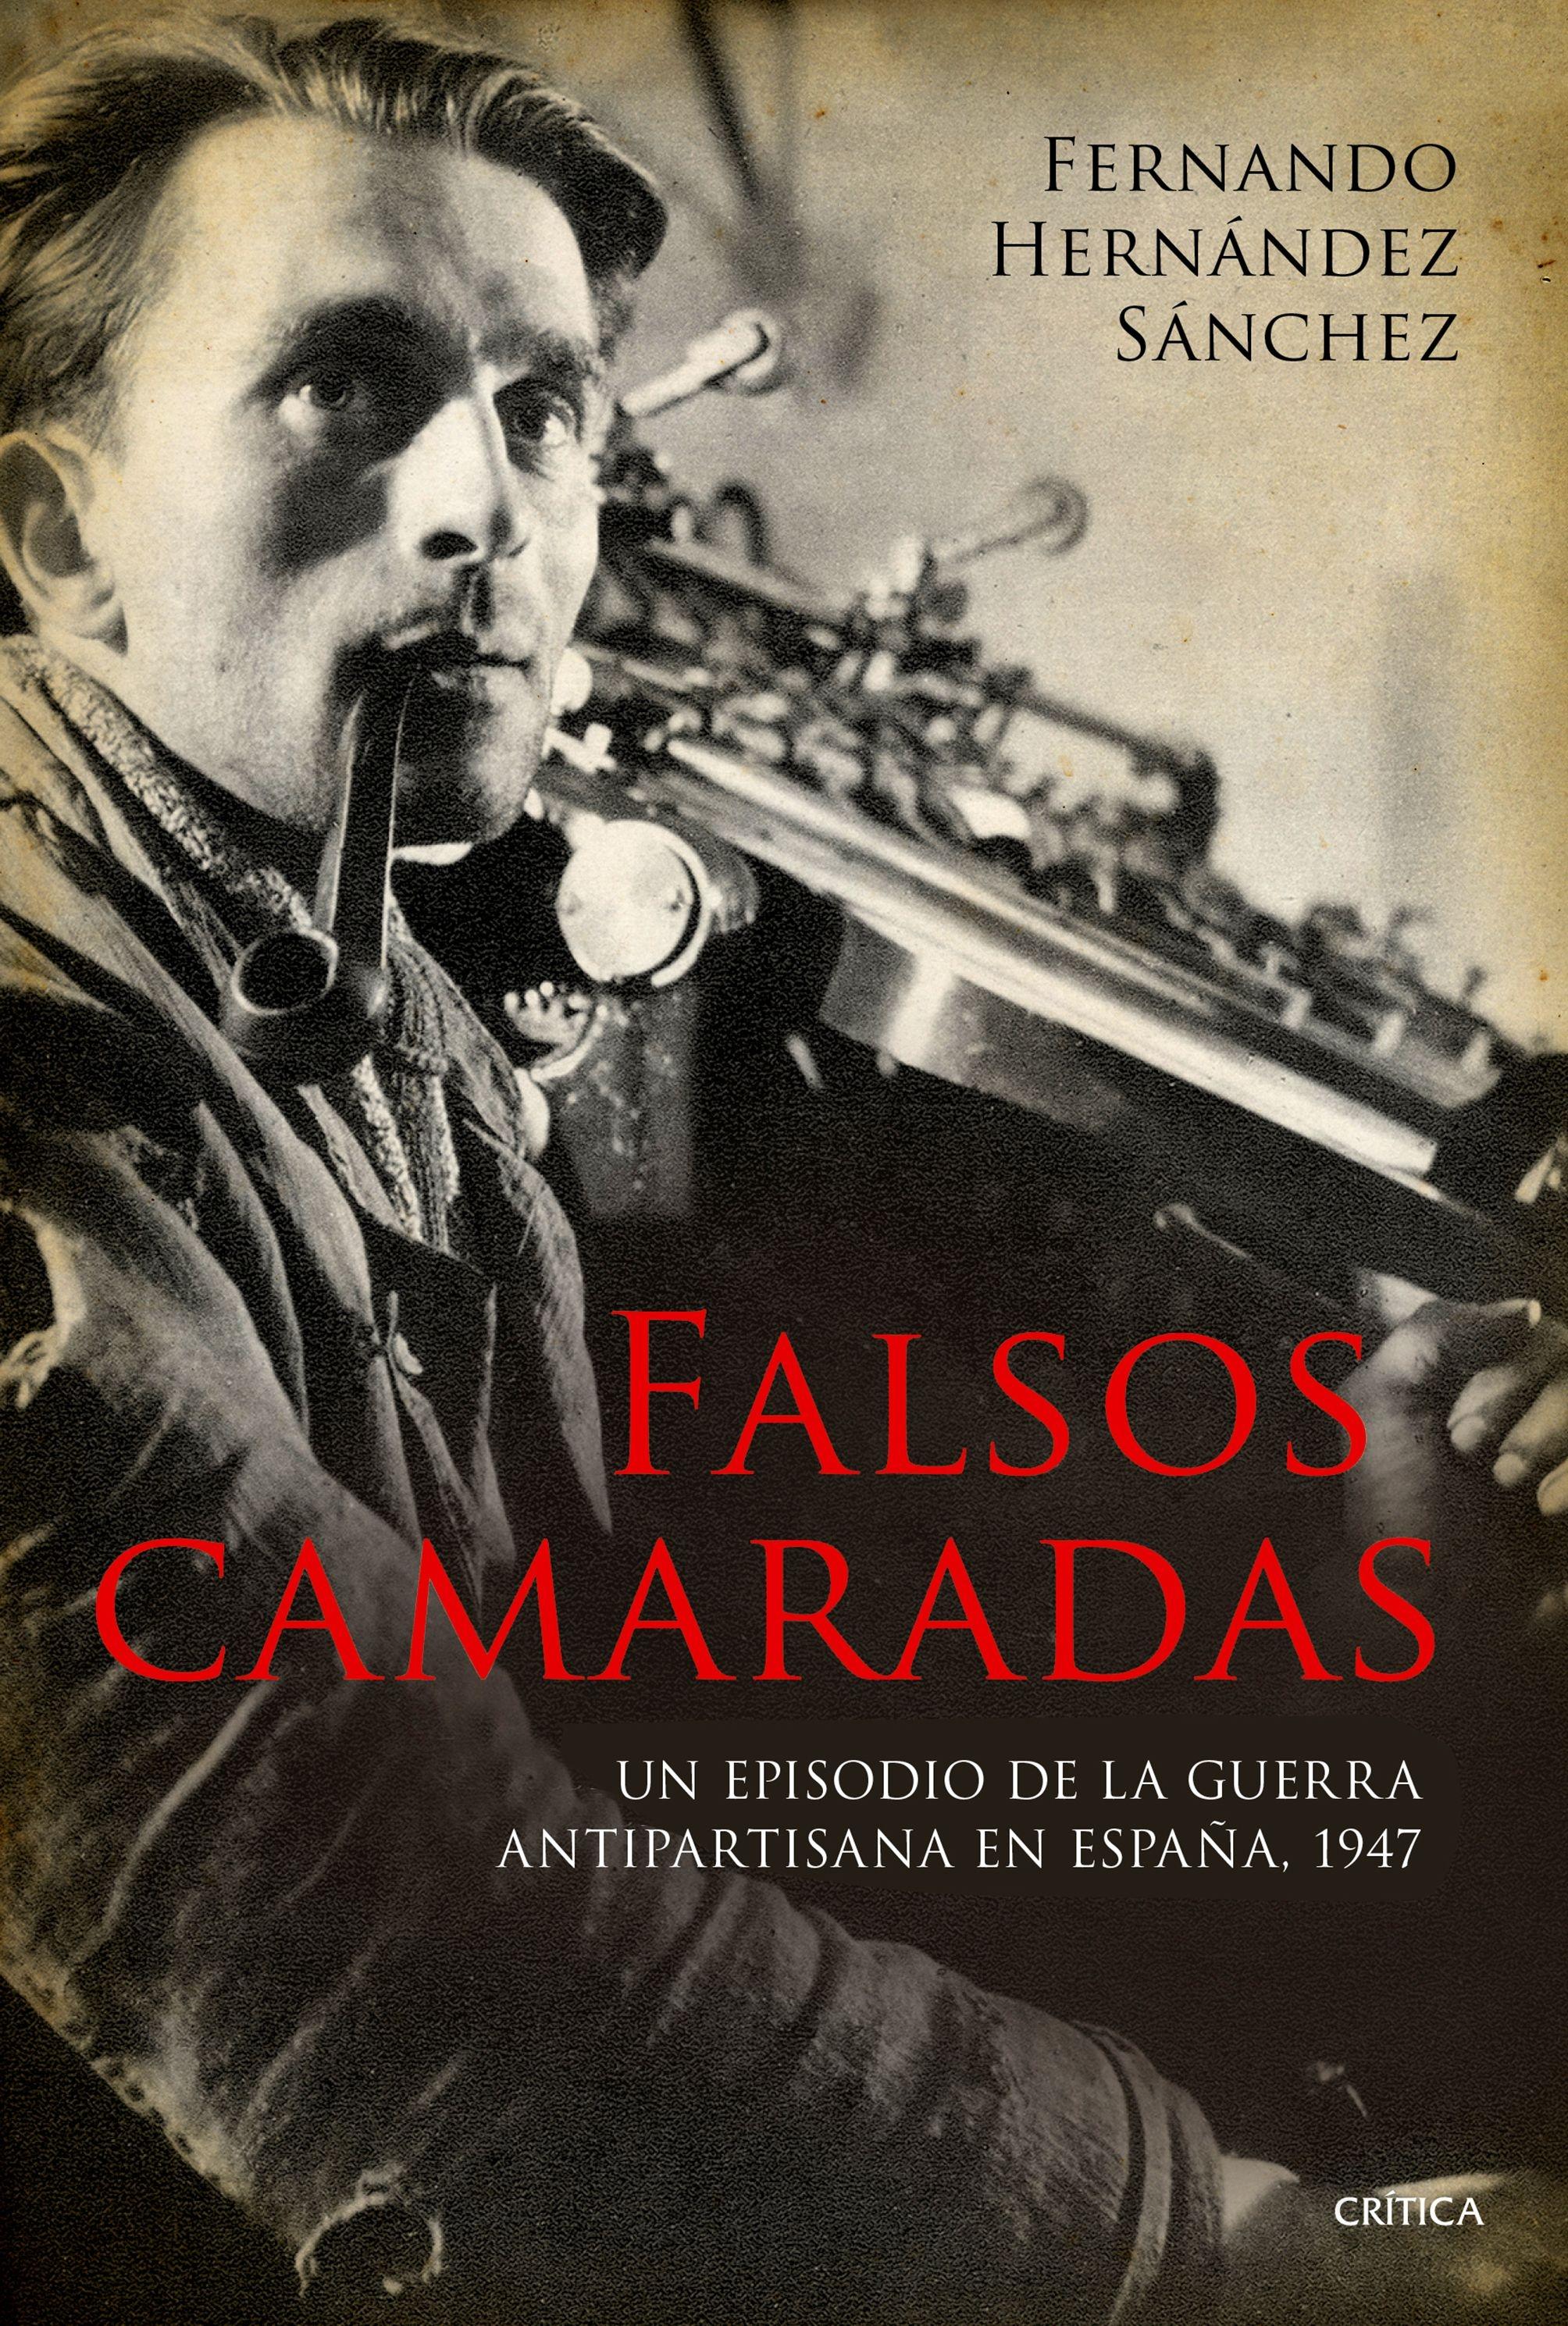 Falsos Camaradas "Un Episodio de la Guerra Antipartisana en España, 1947"